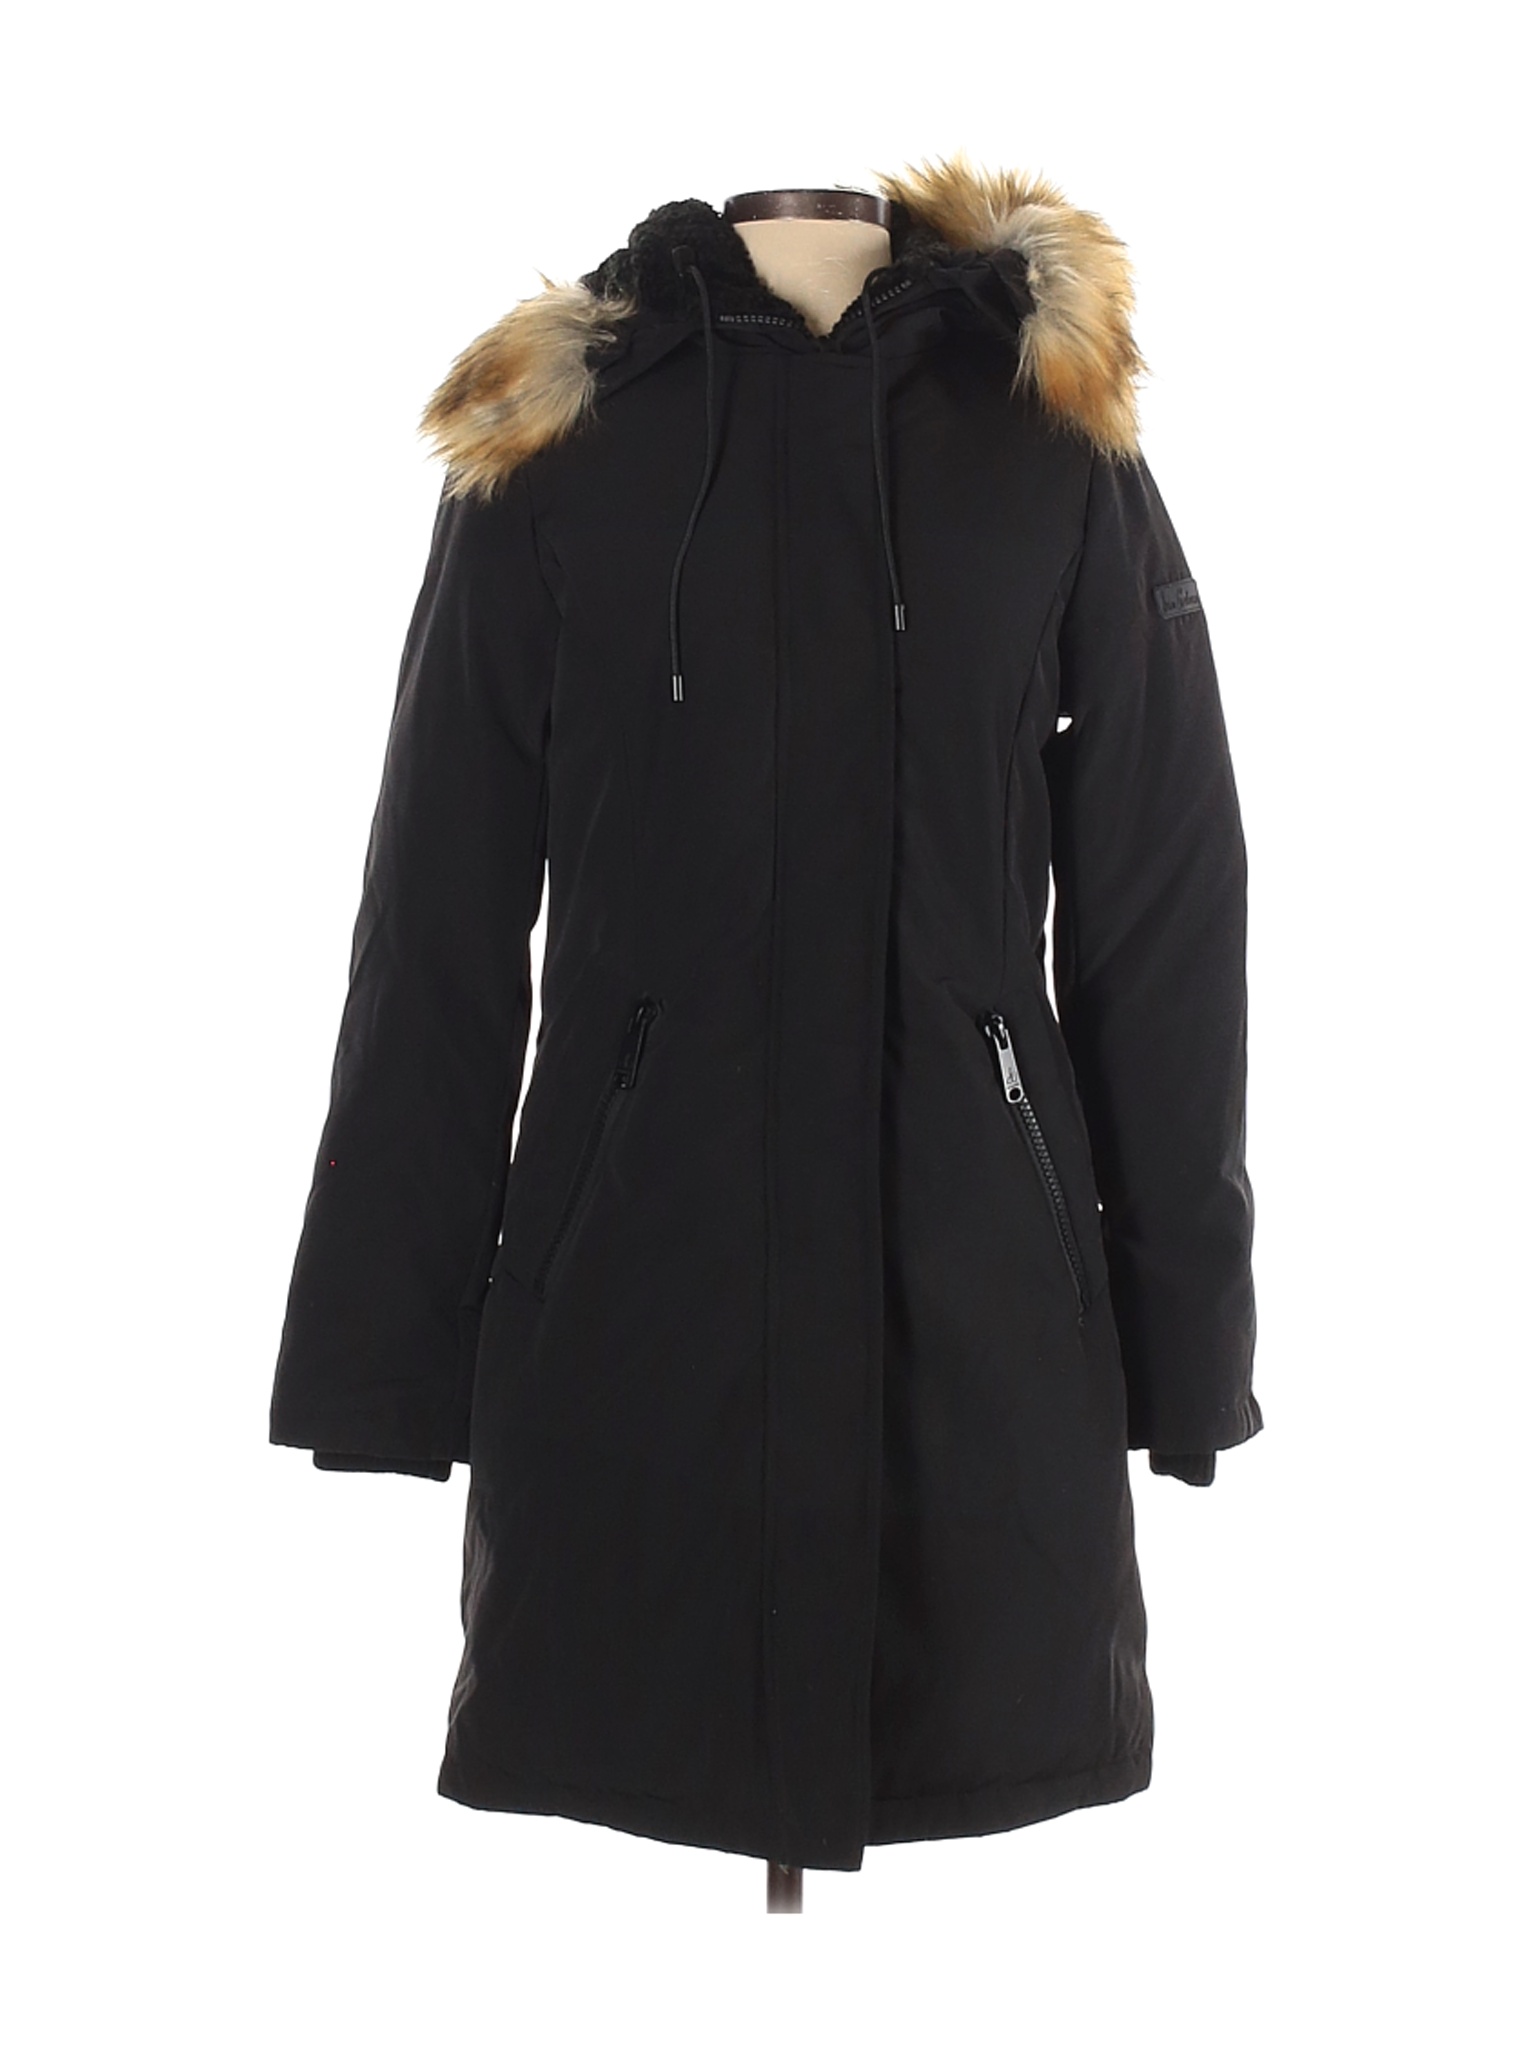 NWT Sam Edelman Women Black Coat S | eBay